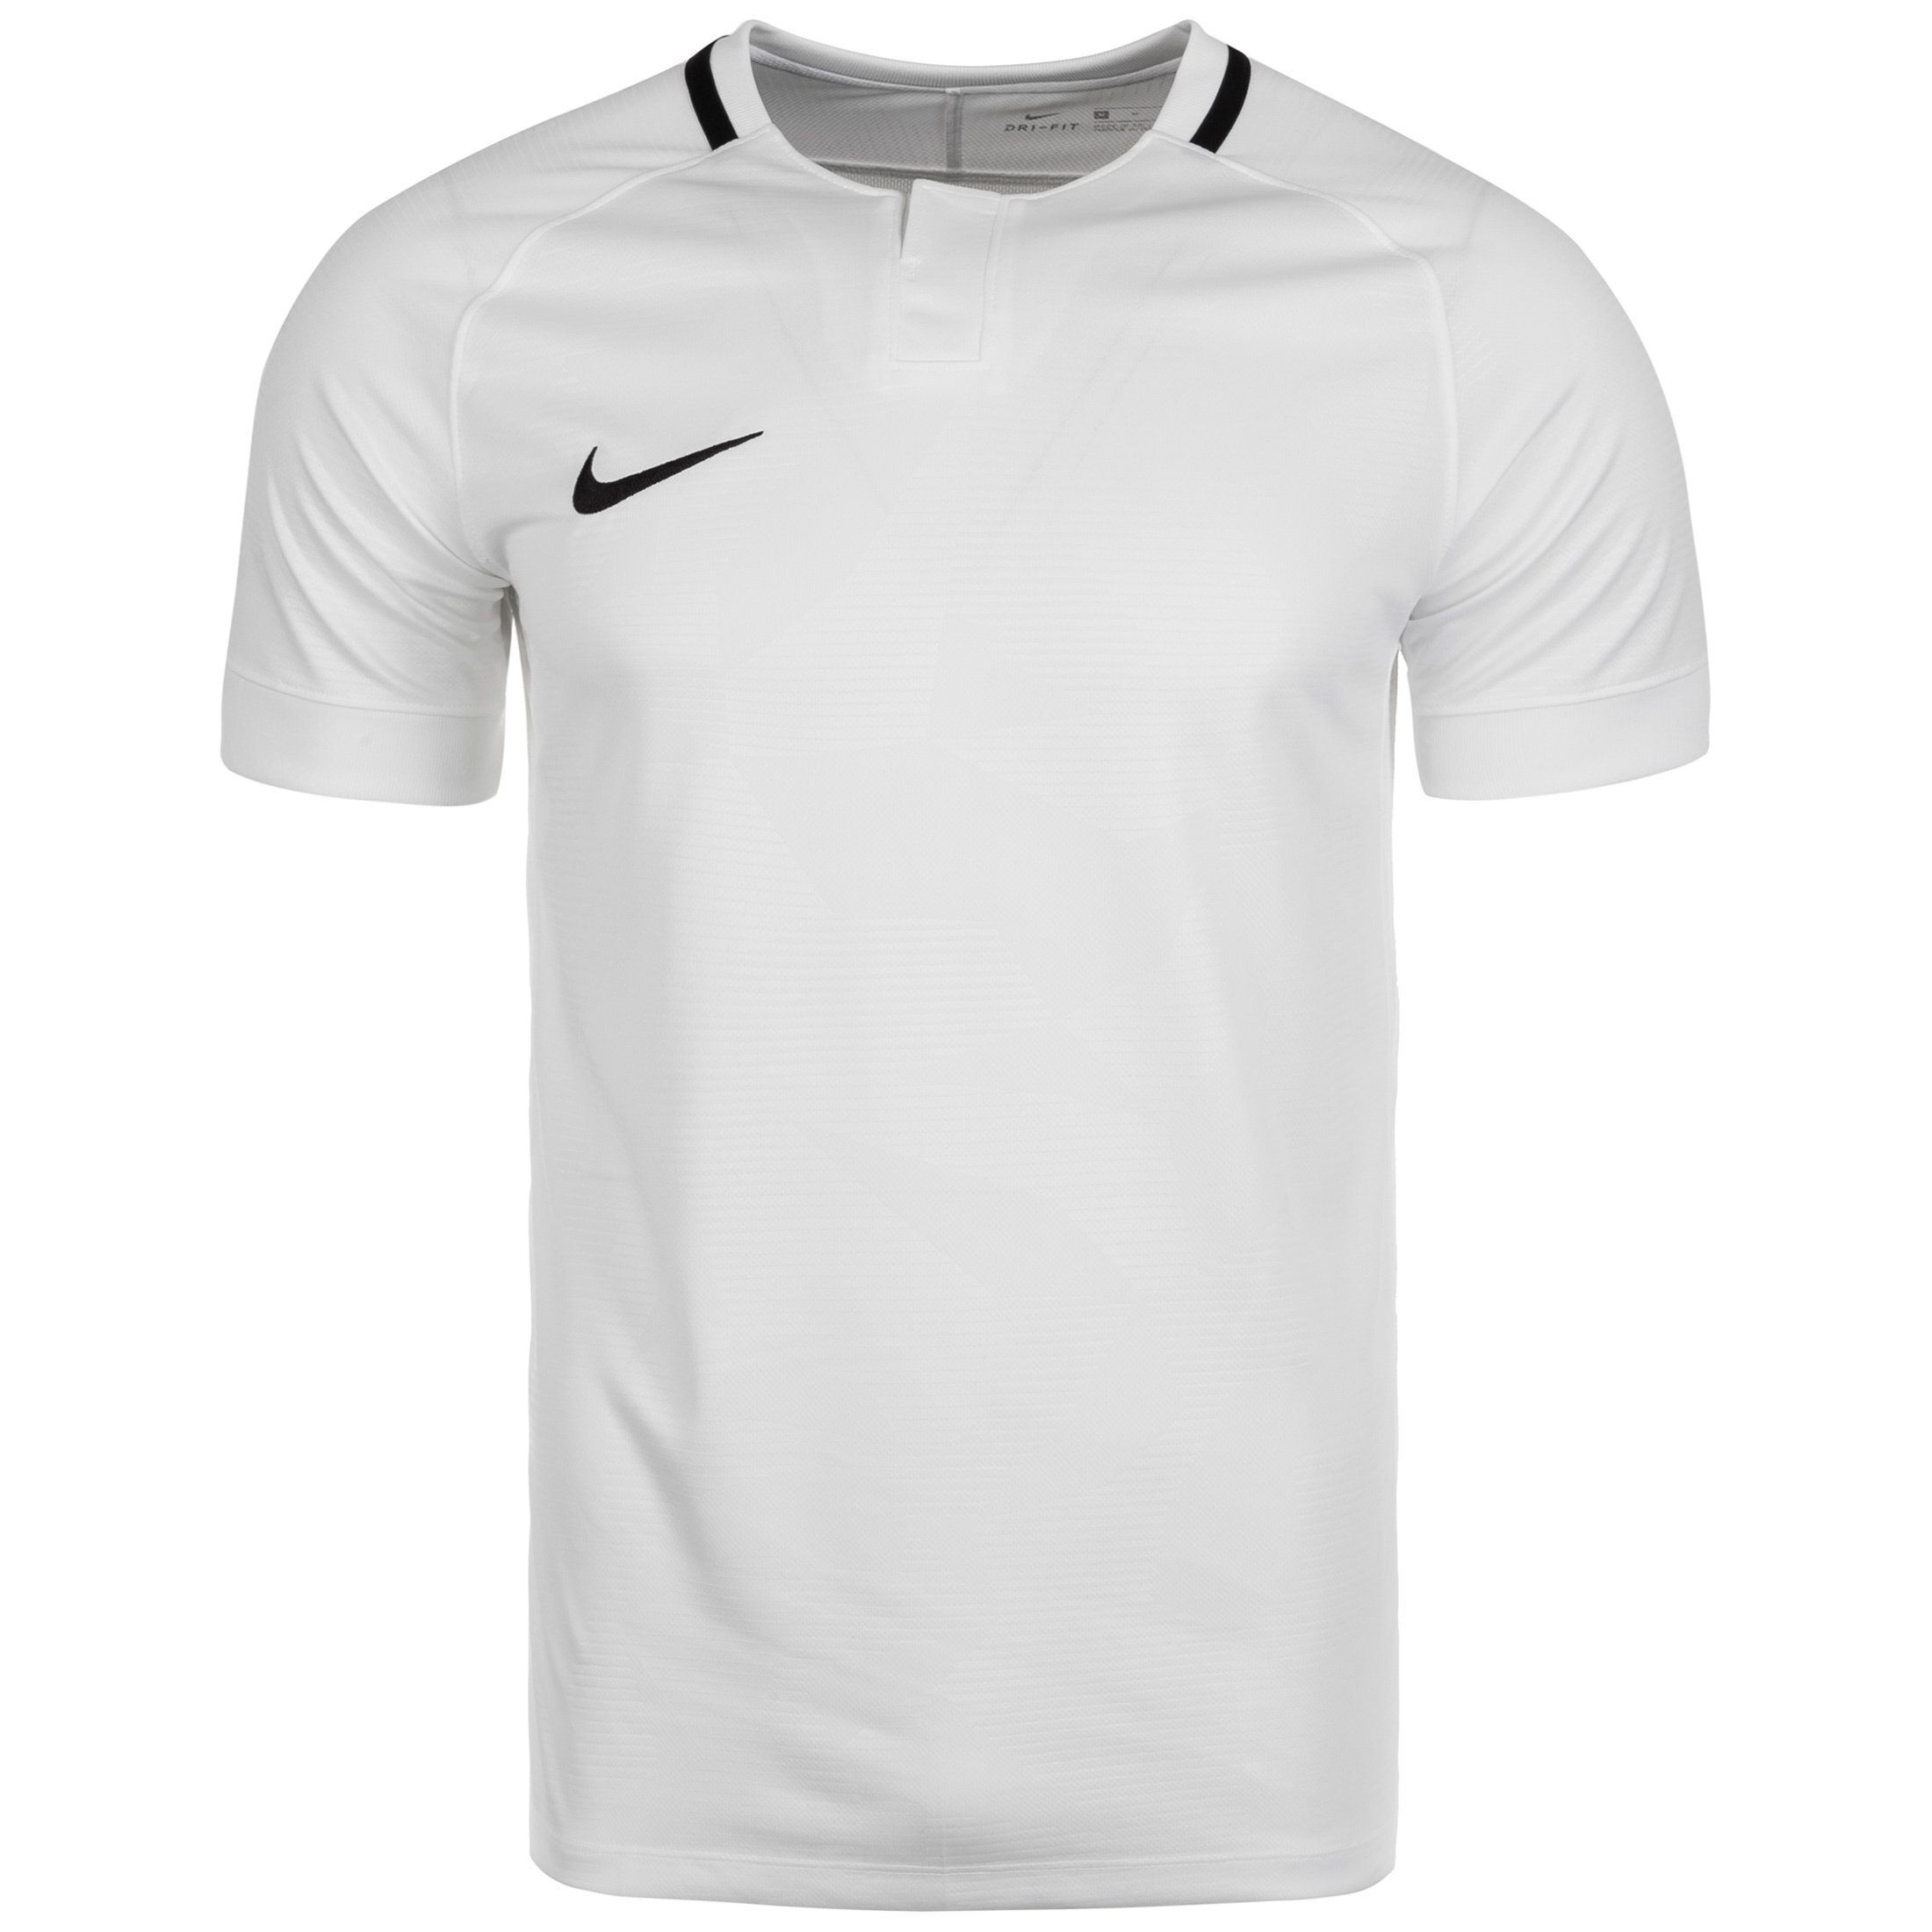 Nike Fußballtrikot »Dry Challenge Ii«, weiß-schwarz